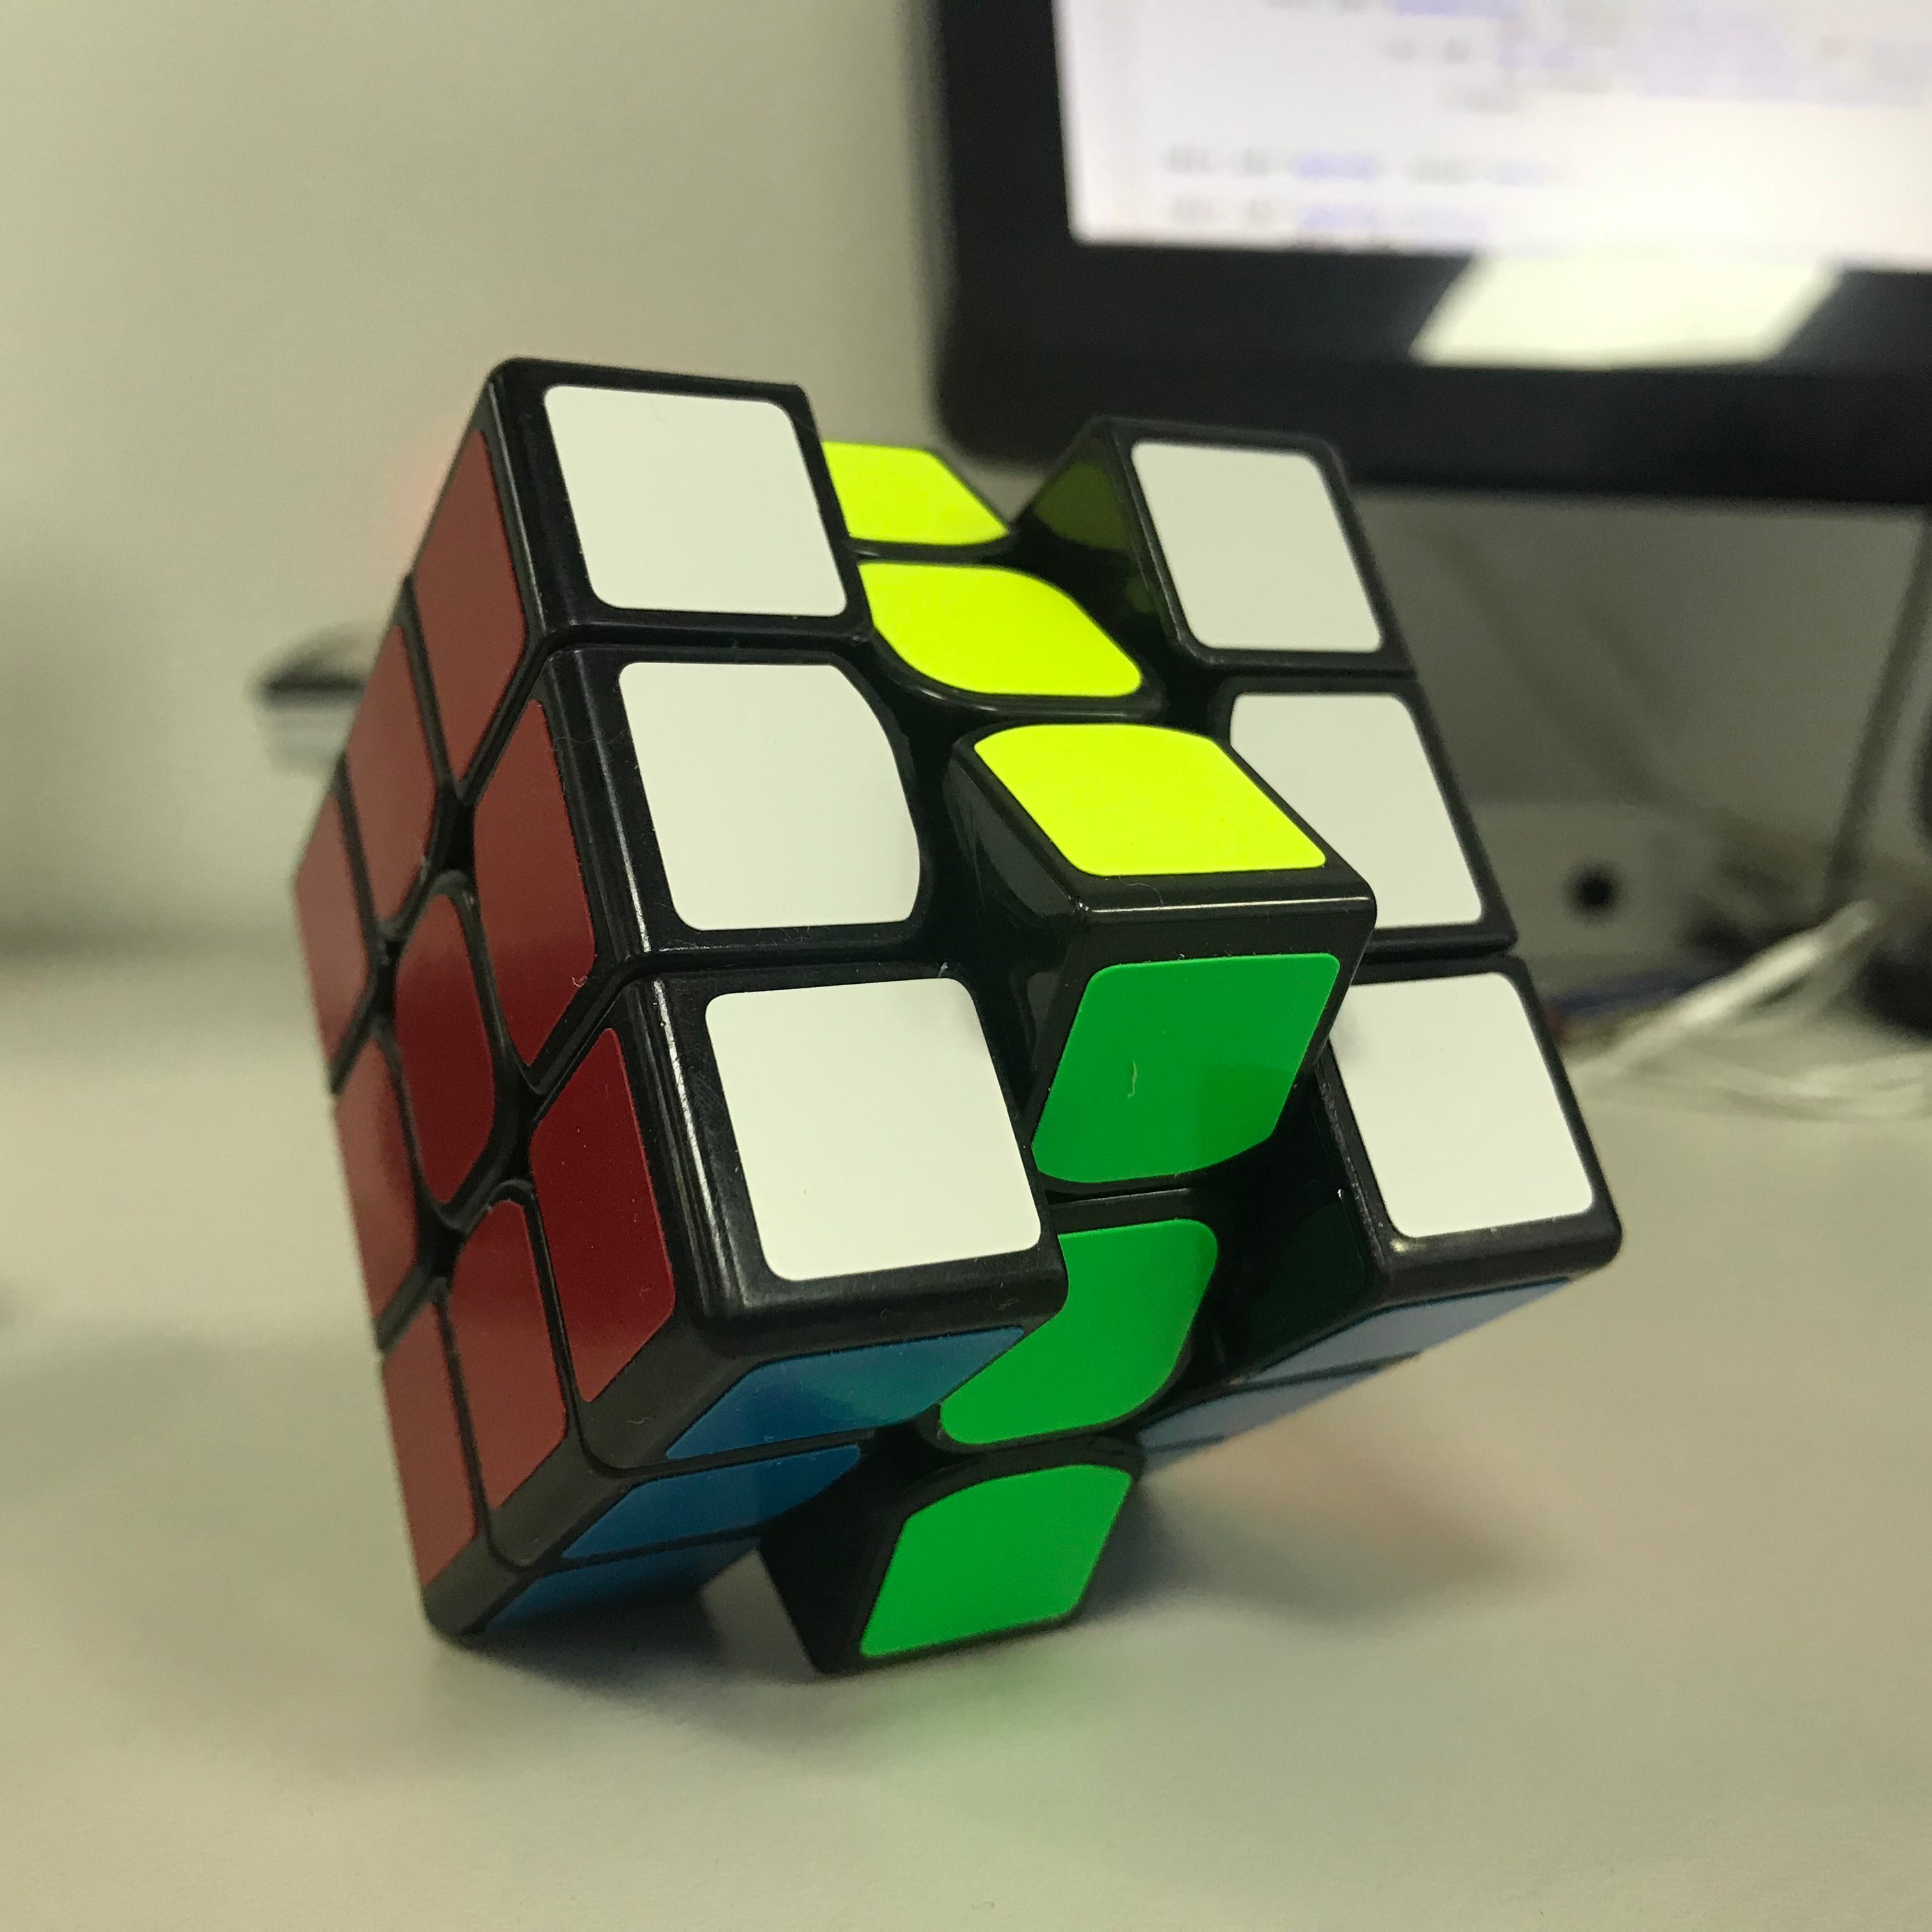 A Rubik's Cube.